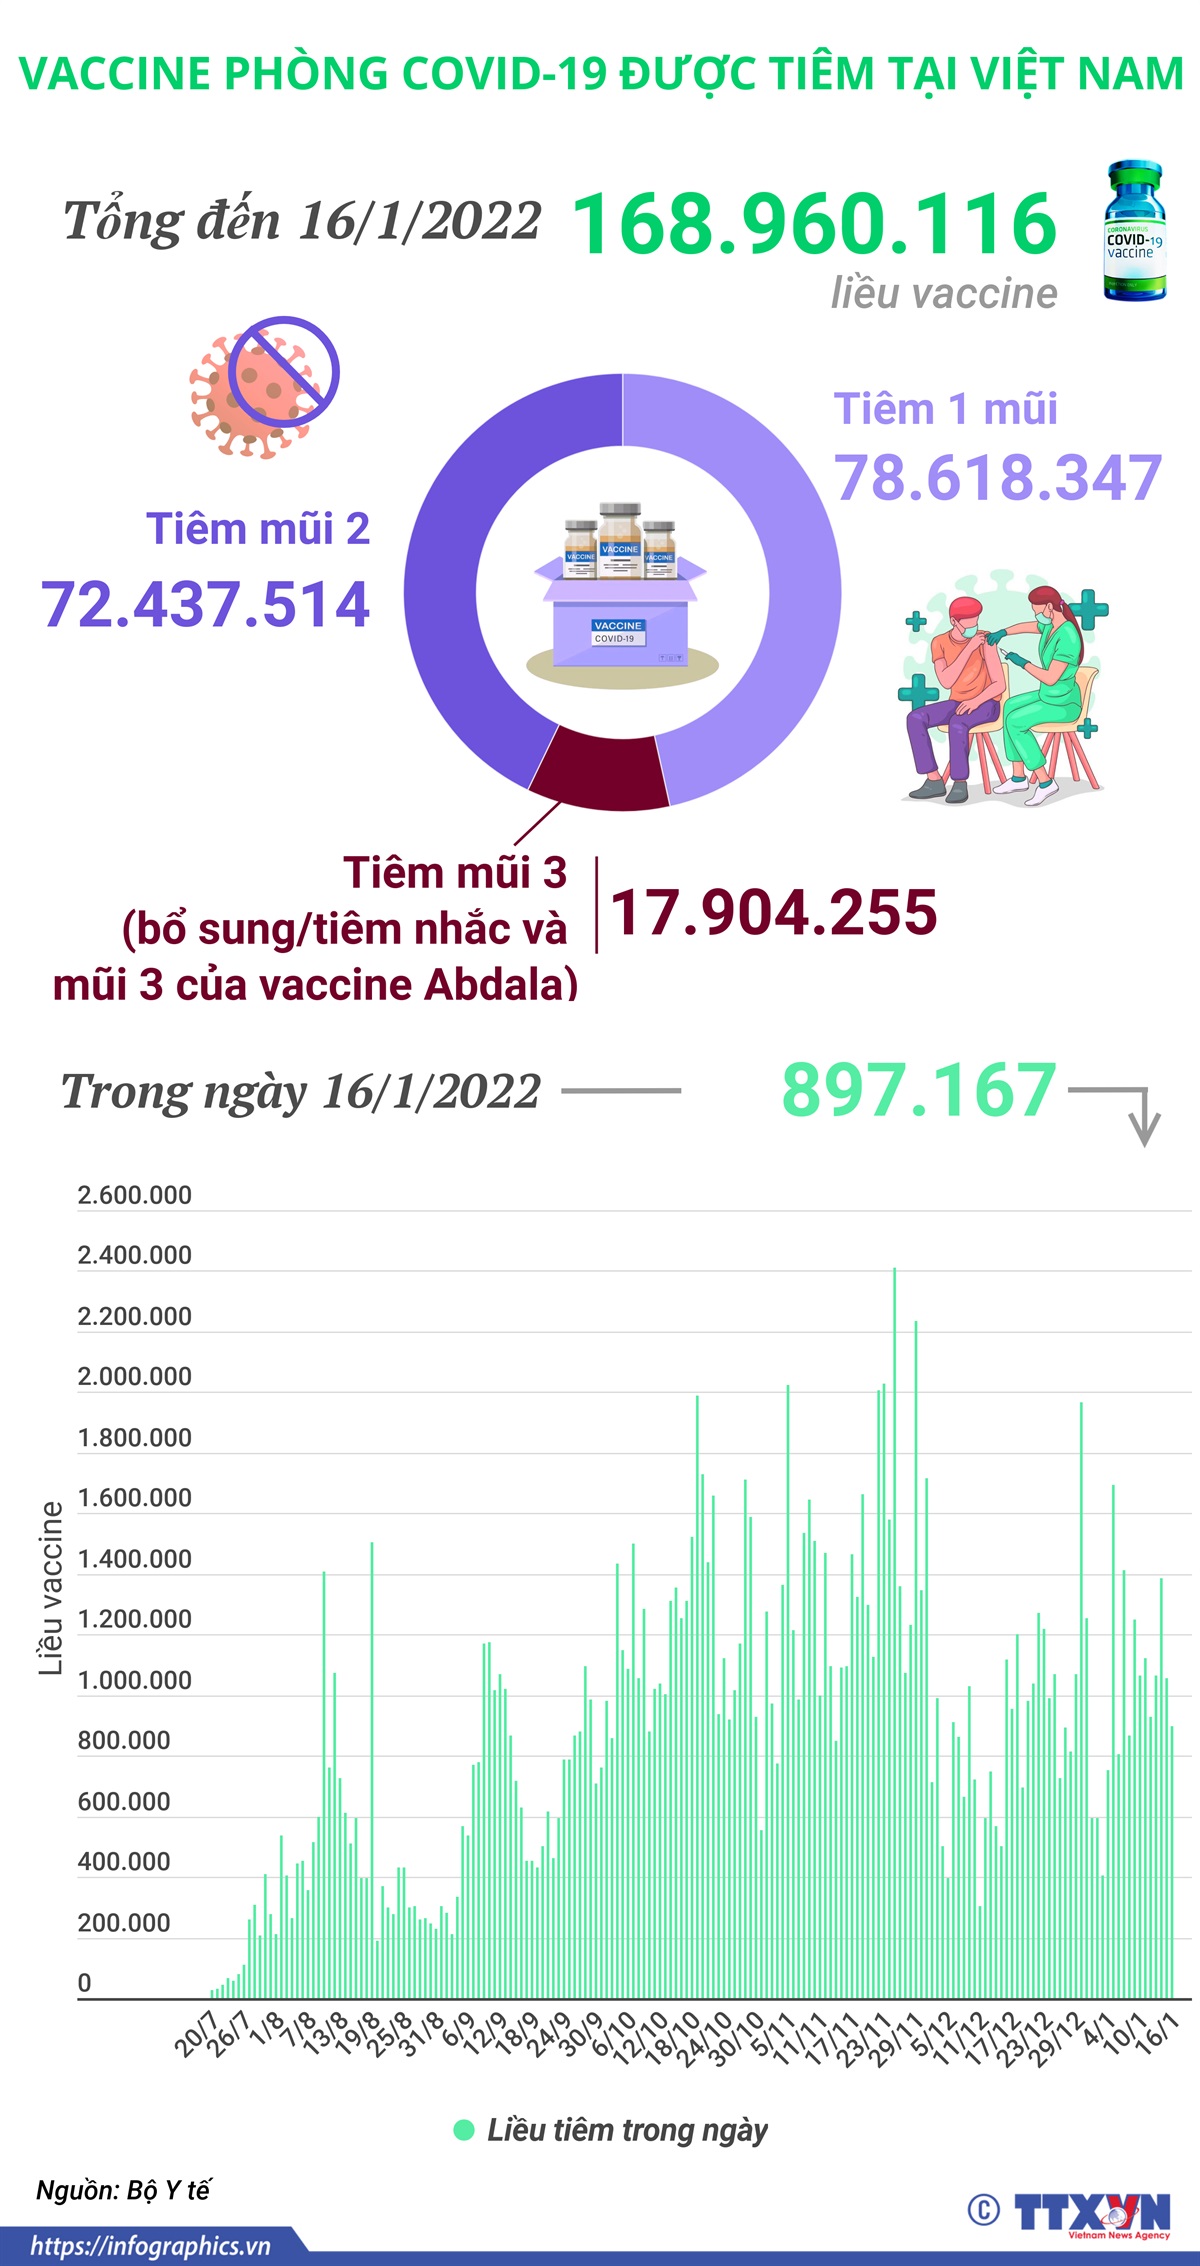 Hơn 168,9 triệu liều vaccine phòng COVID-19 đã được tiêm tại Việt Nam